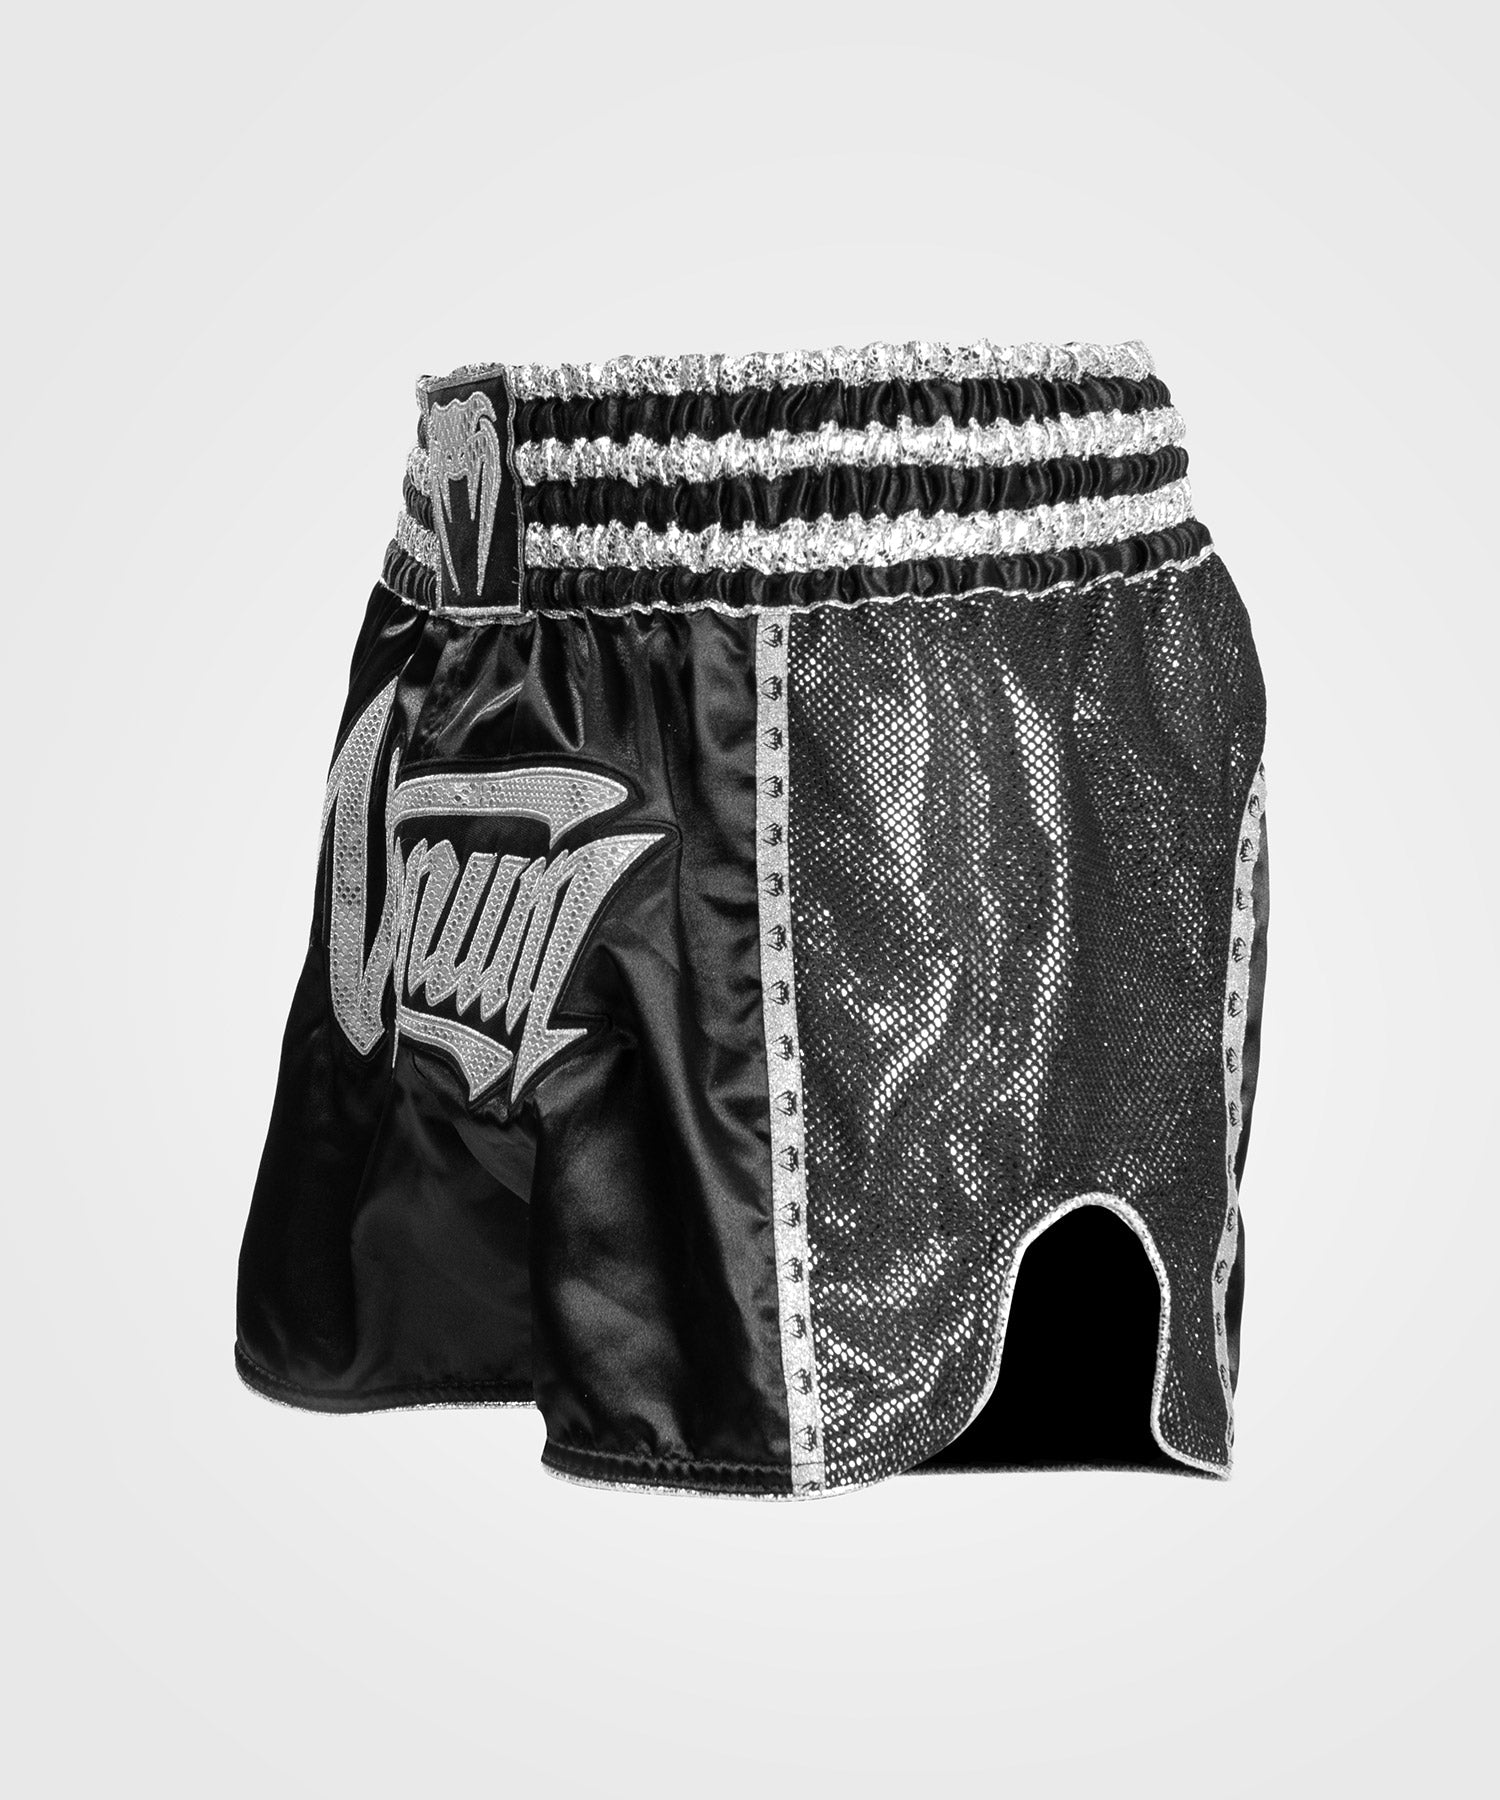 Pantalones Cortos de Boxeo Tailandés Venum Classic - Plata/Negro – Venum  España